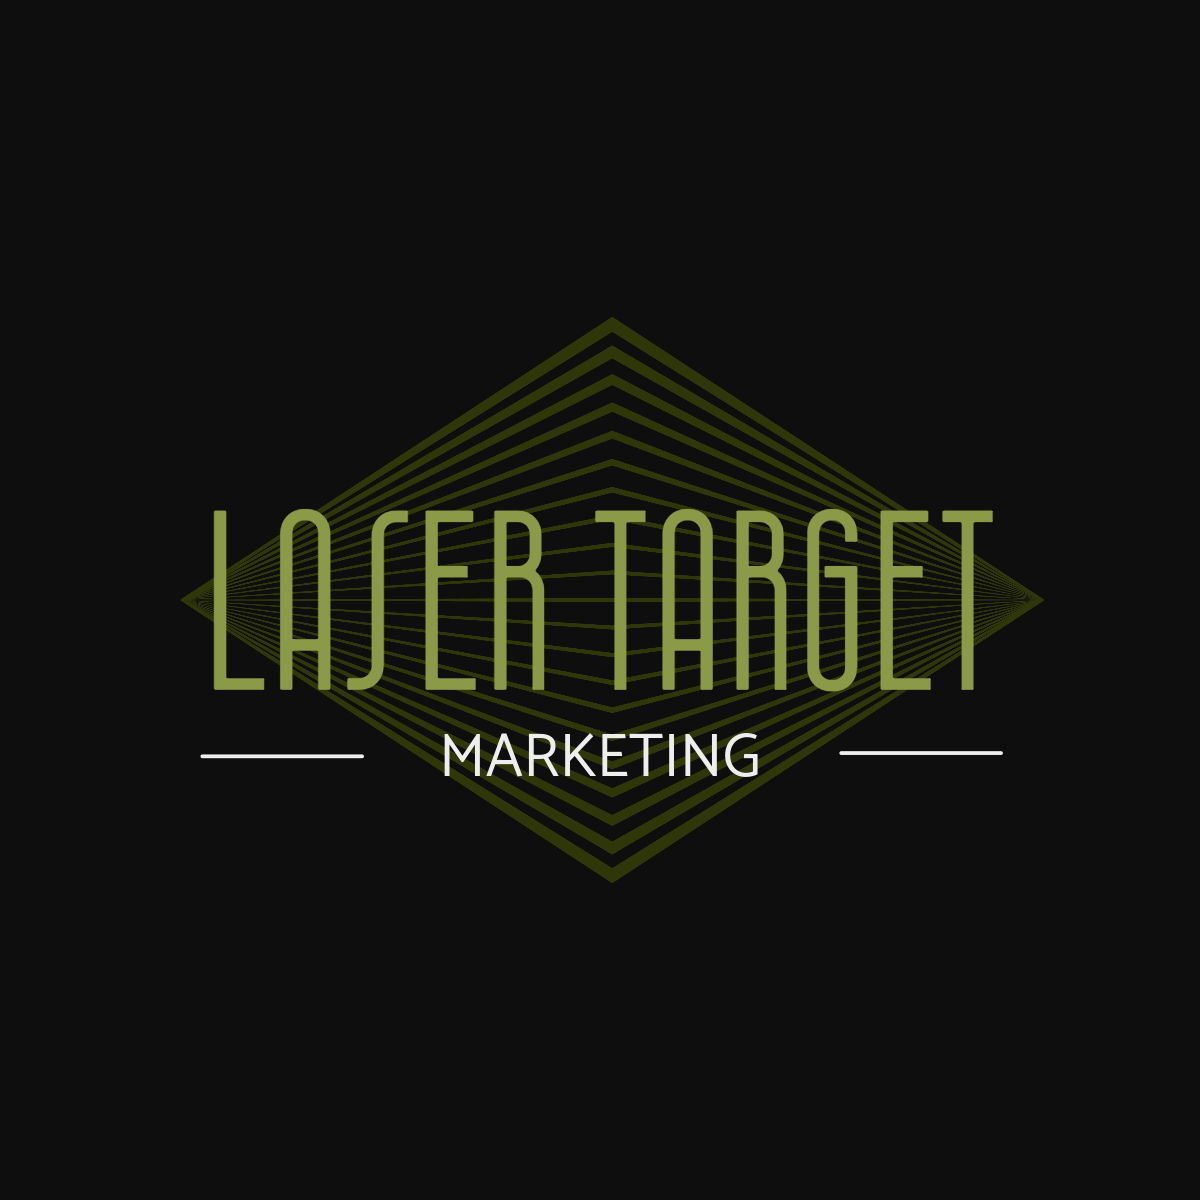 Laser Target Marketing